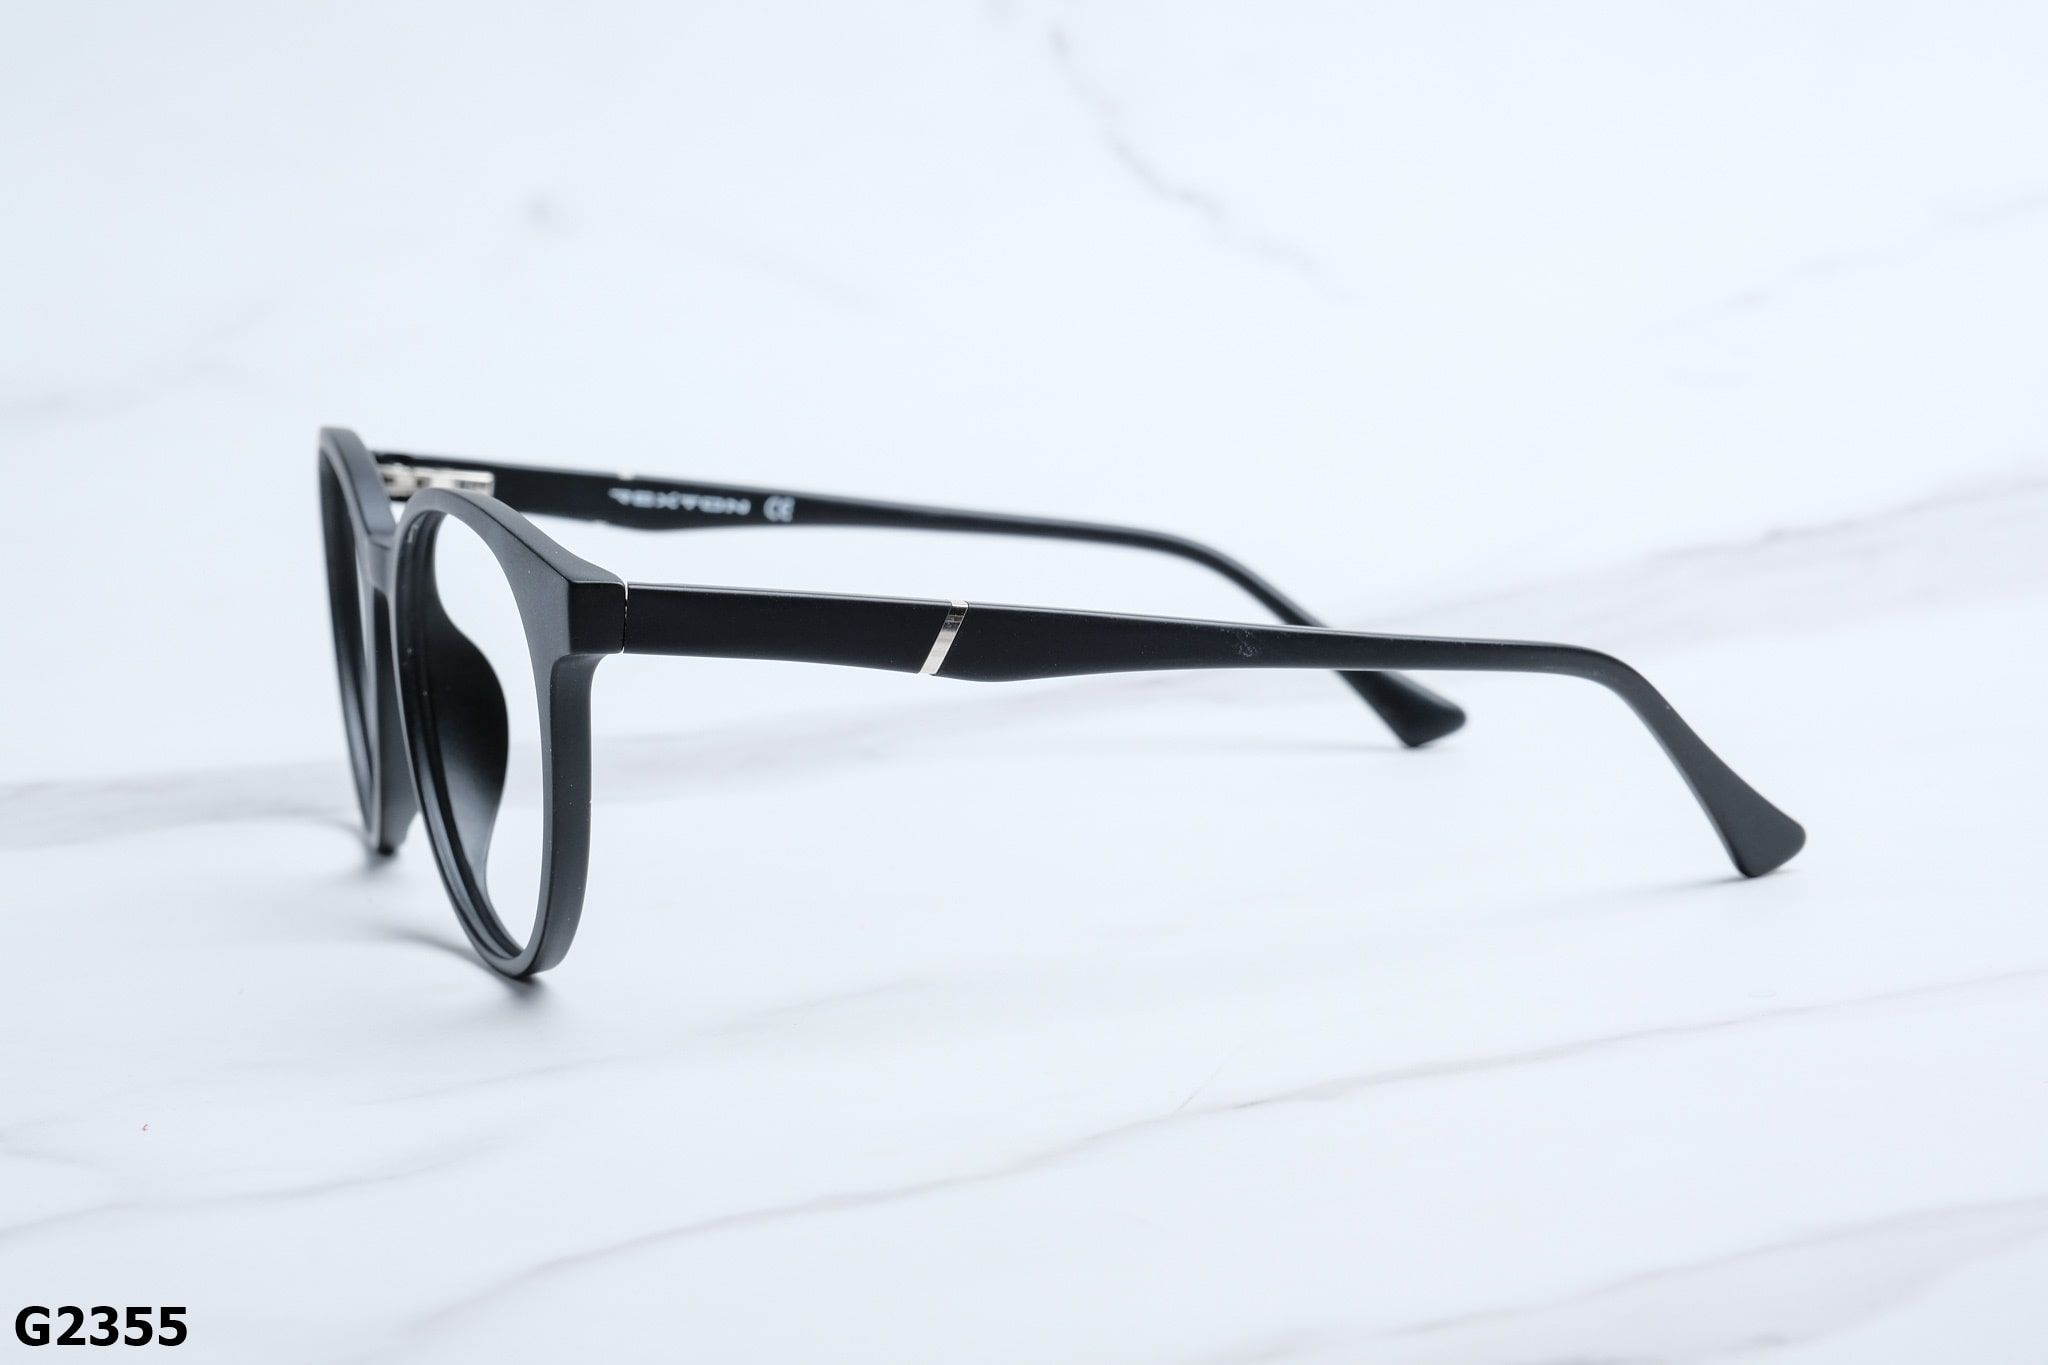  Rex-ton Eyewear - Glasses - G2355 